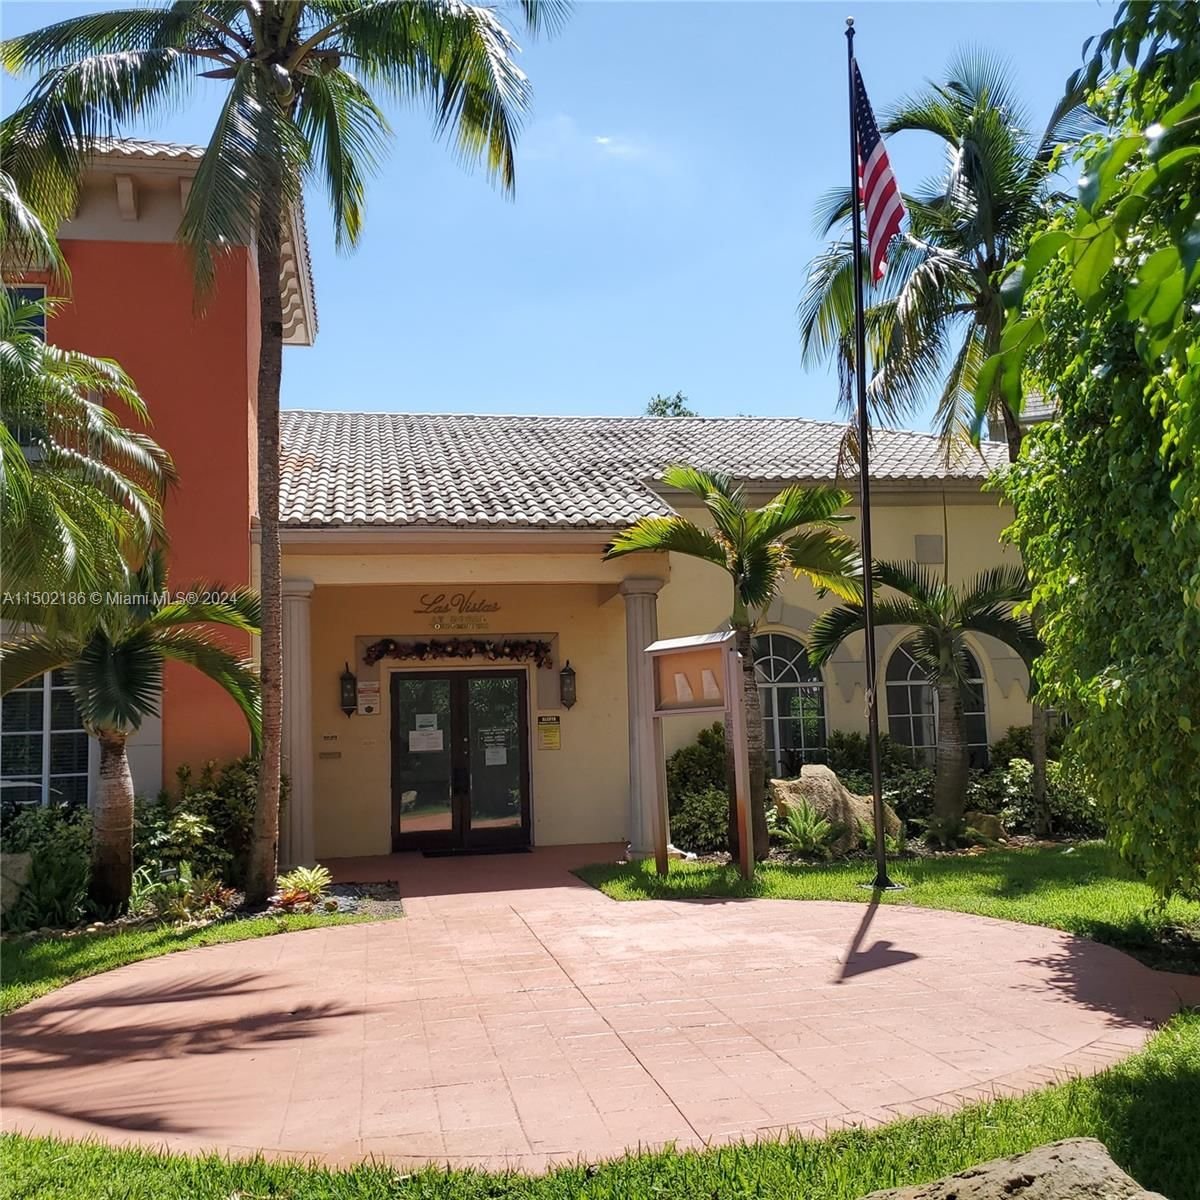 Real estate property located at , Miami-Dade County, LAS VISTAS AT DORAL CONDO, Doral, FL